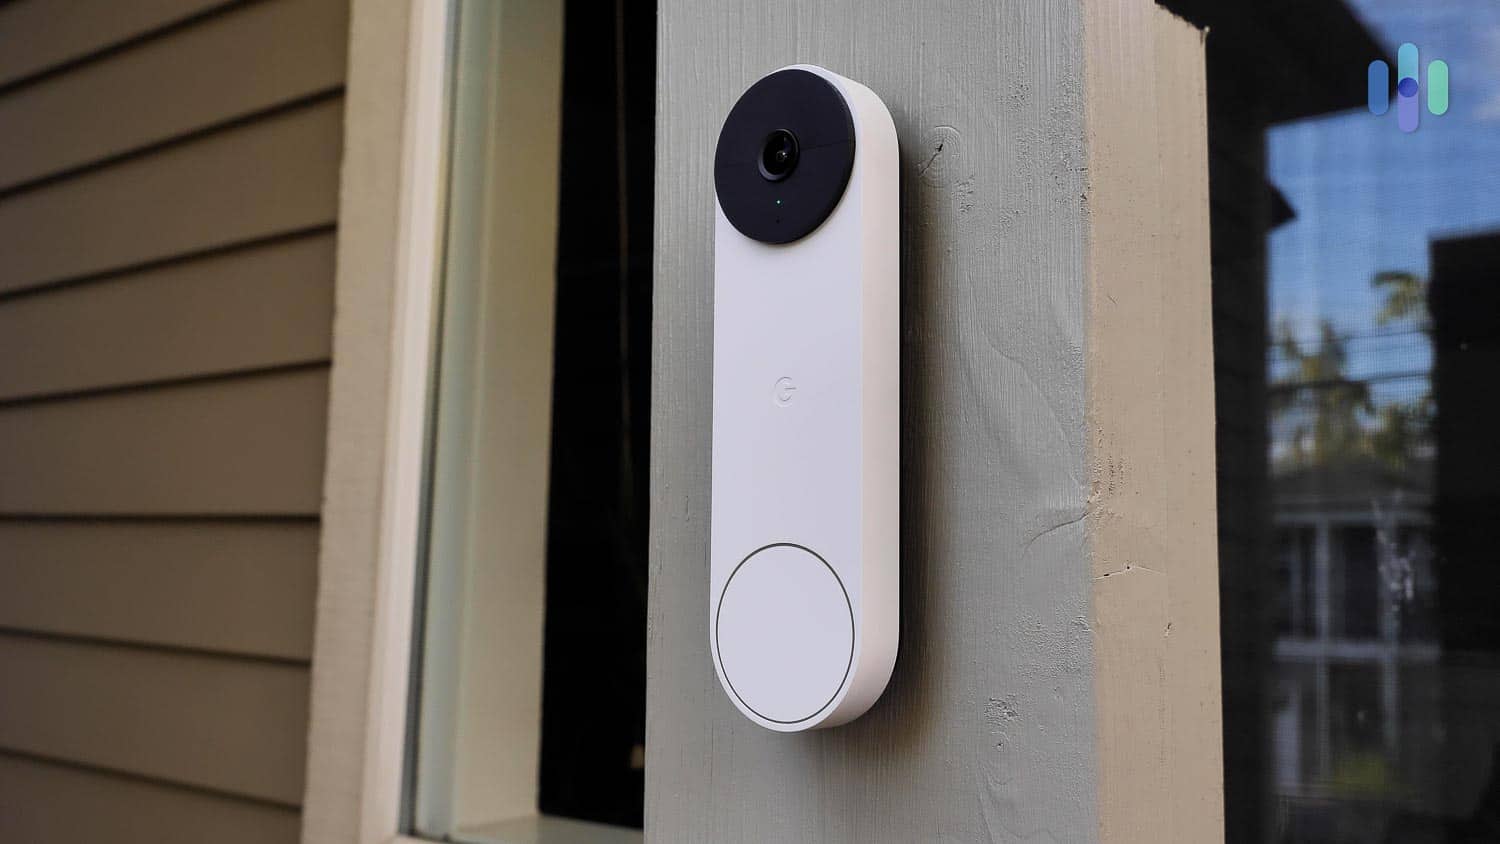 https://www.security.org/app/uploads/2021/08/Nest-Doorbell-4.jpg